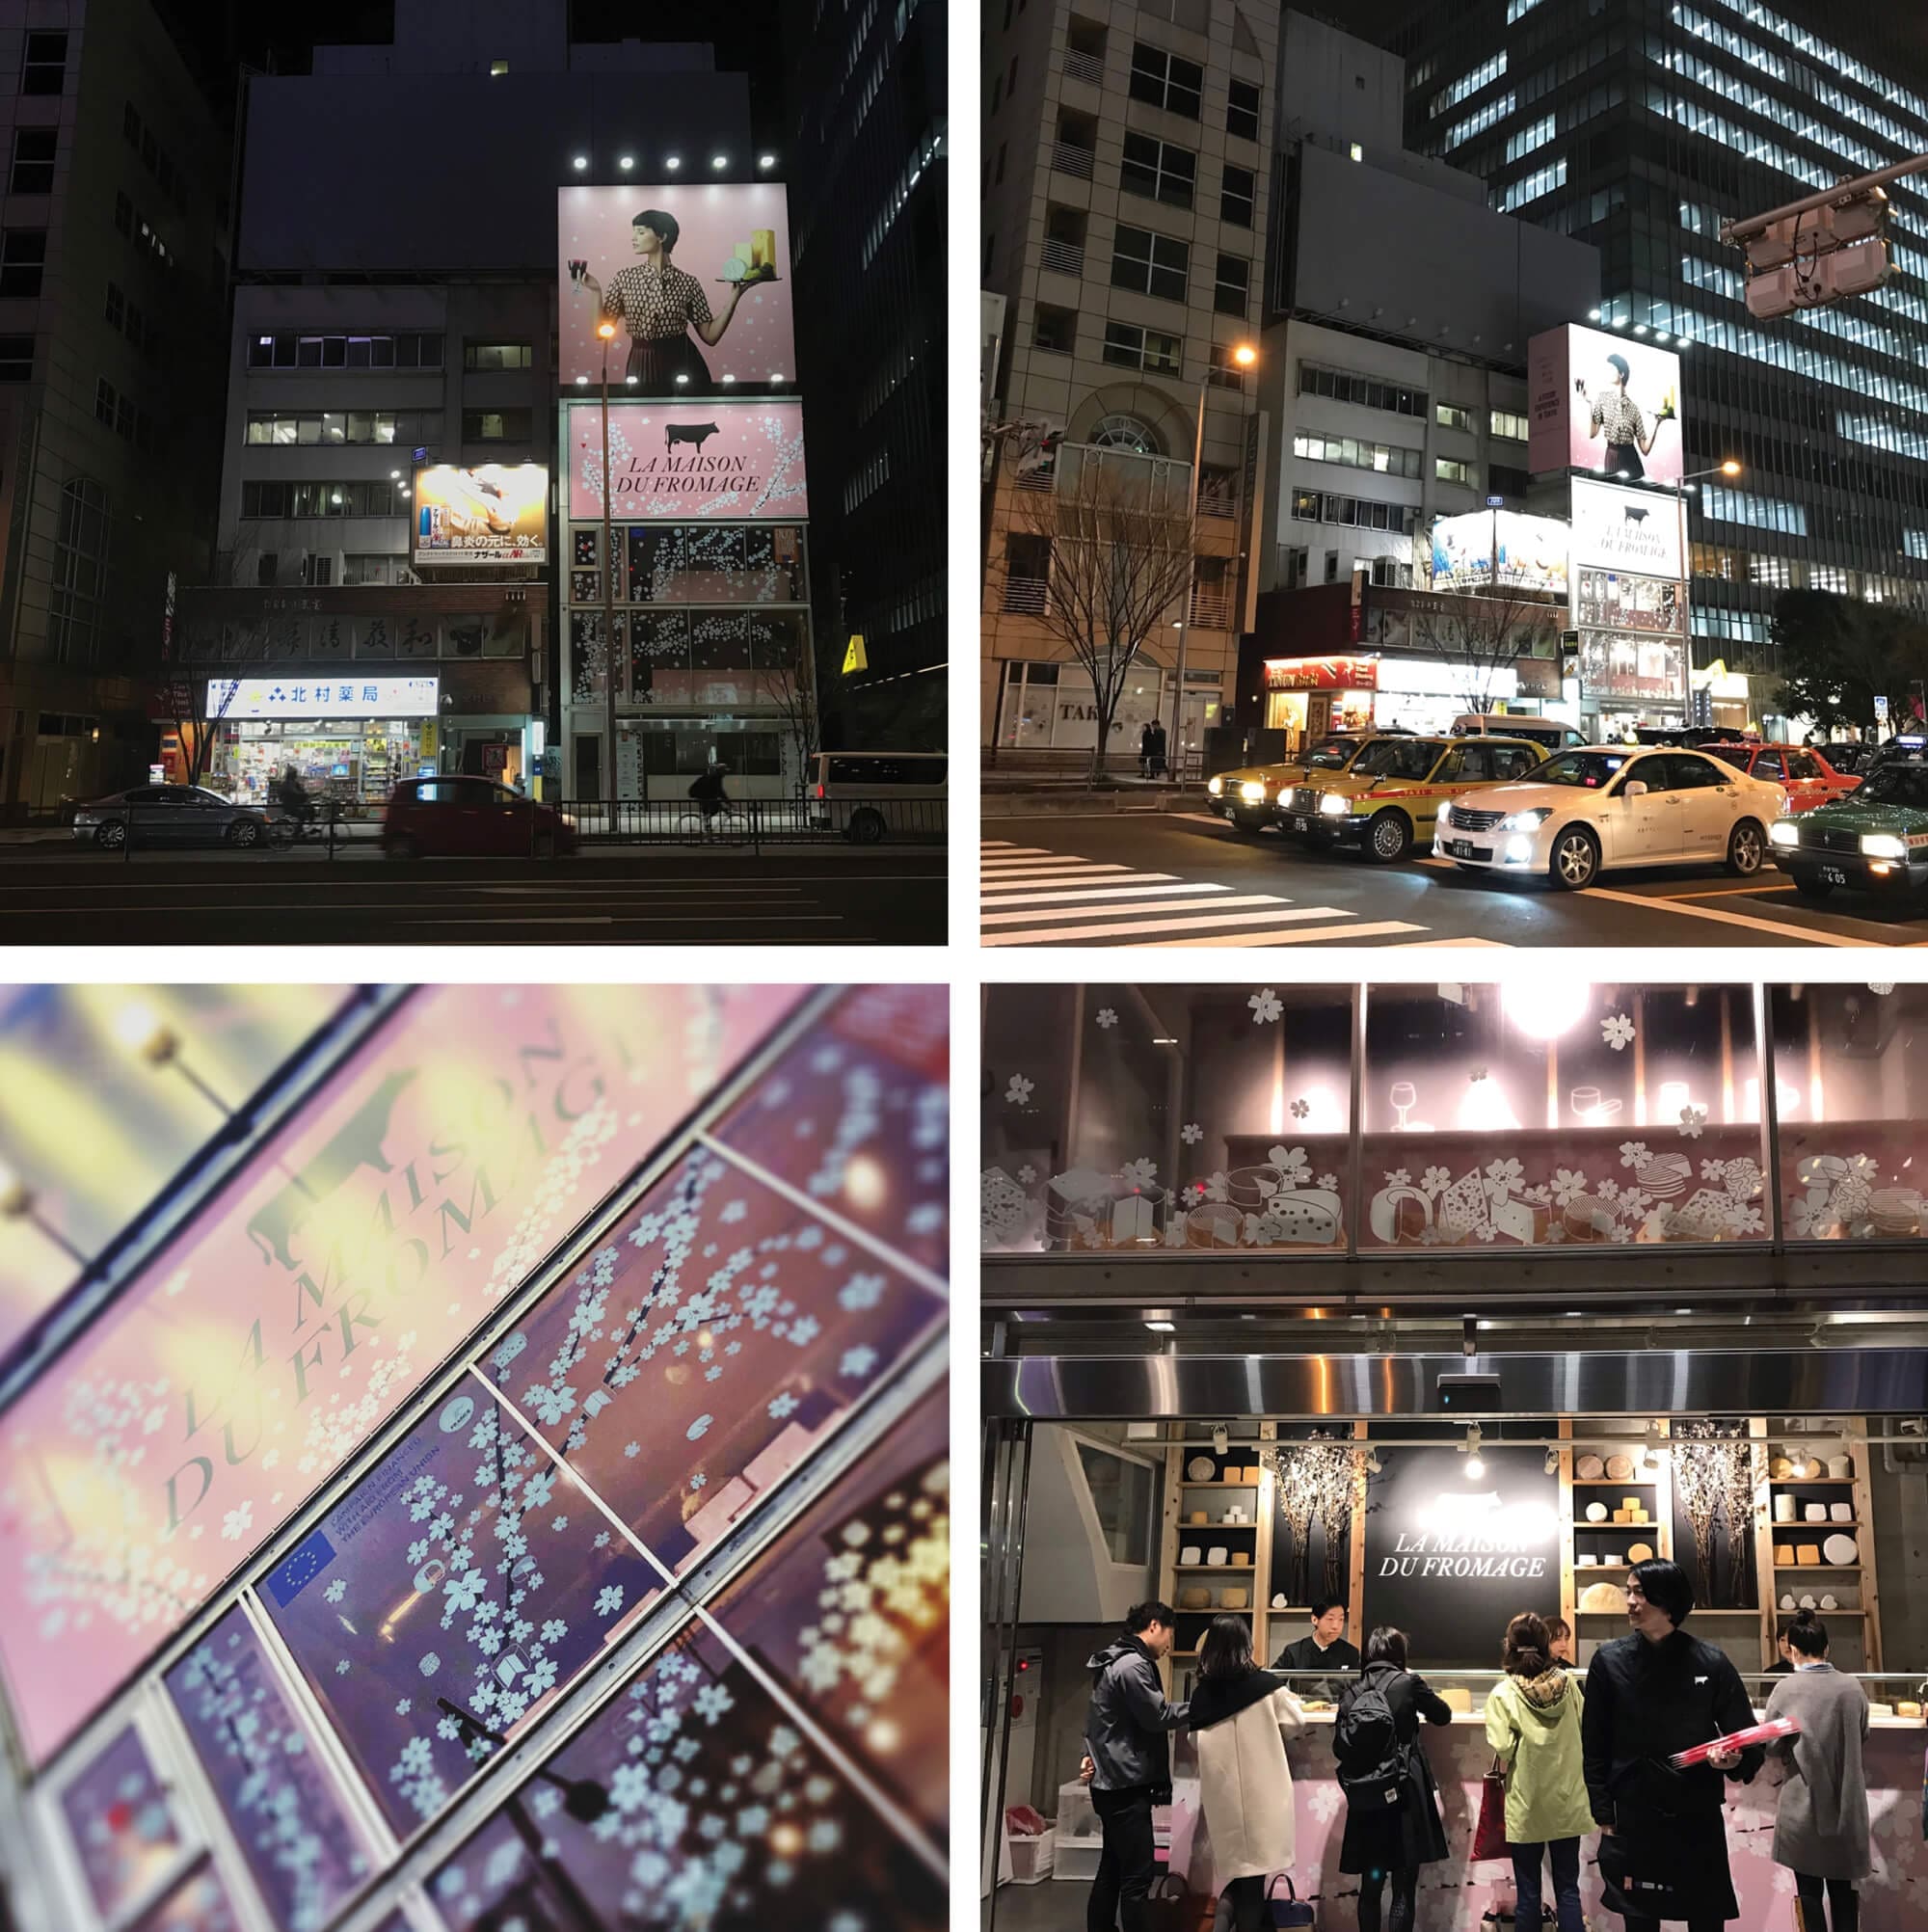 le retail design pensé jour et nuit, dans le fashion district de tokyo le pop up store d'ichetkar rayonne